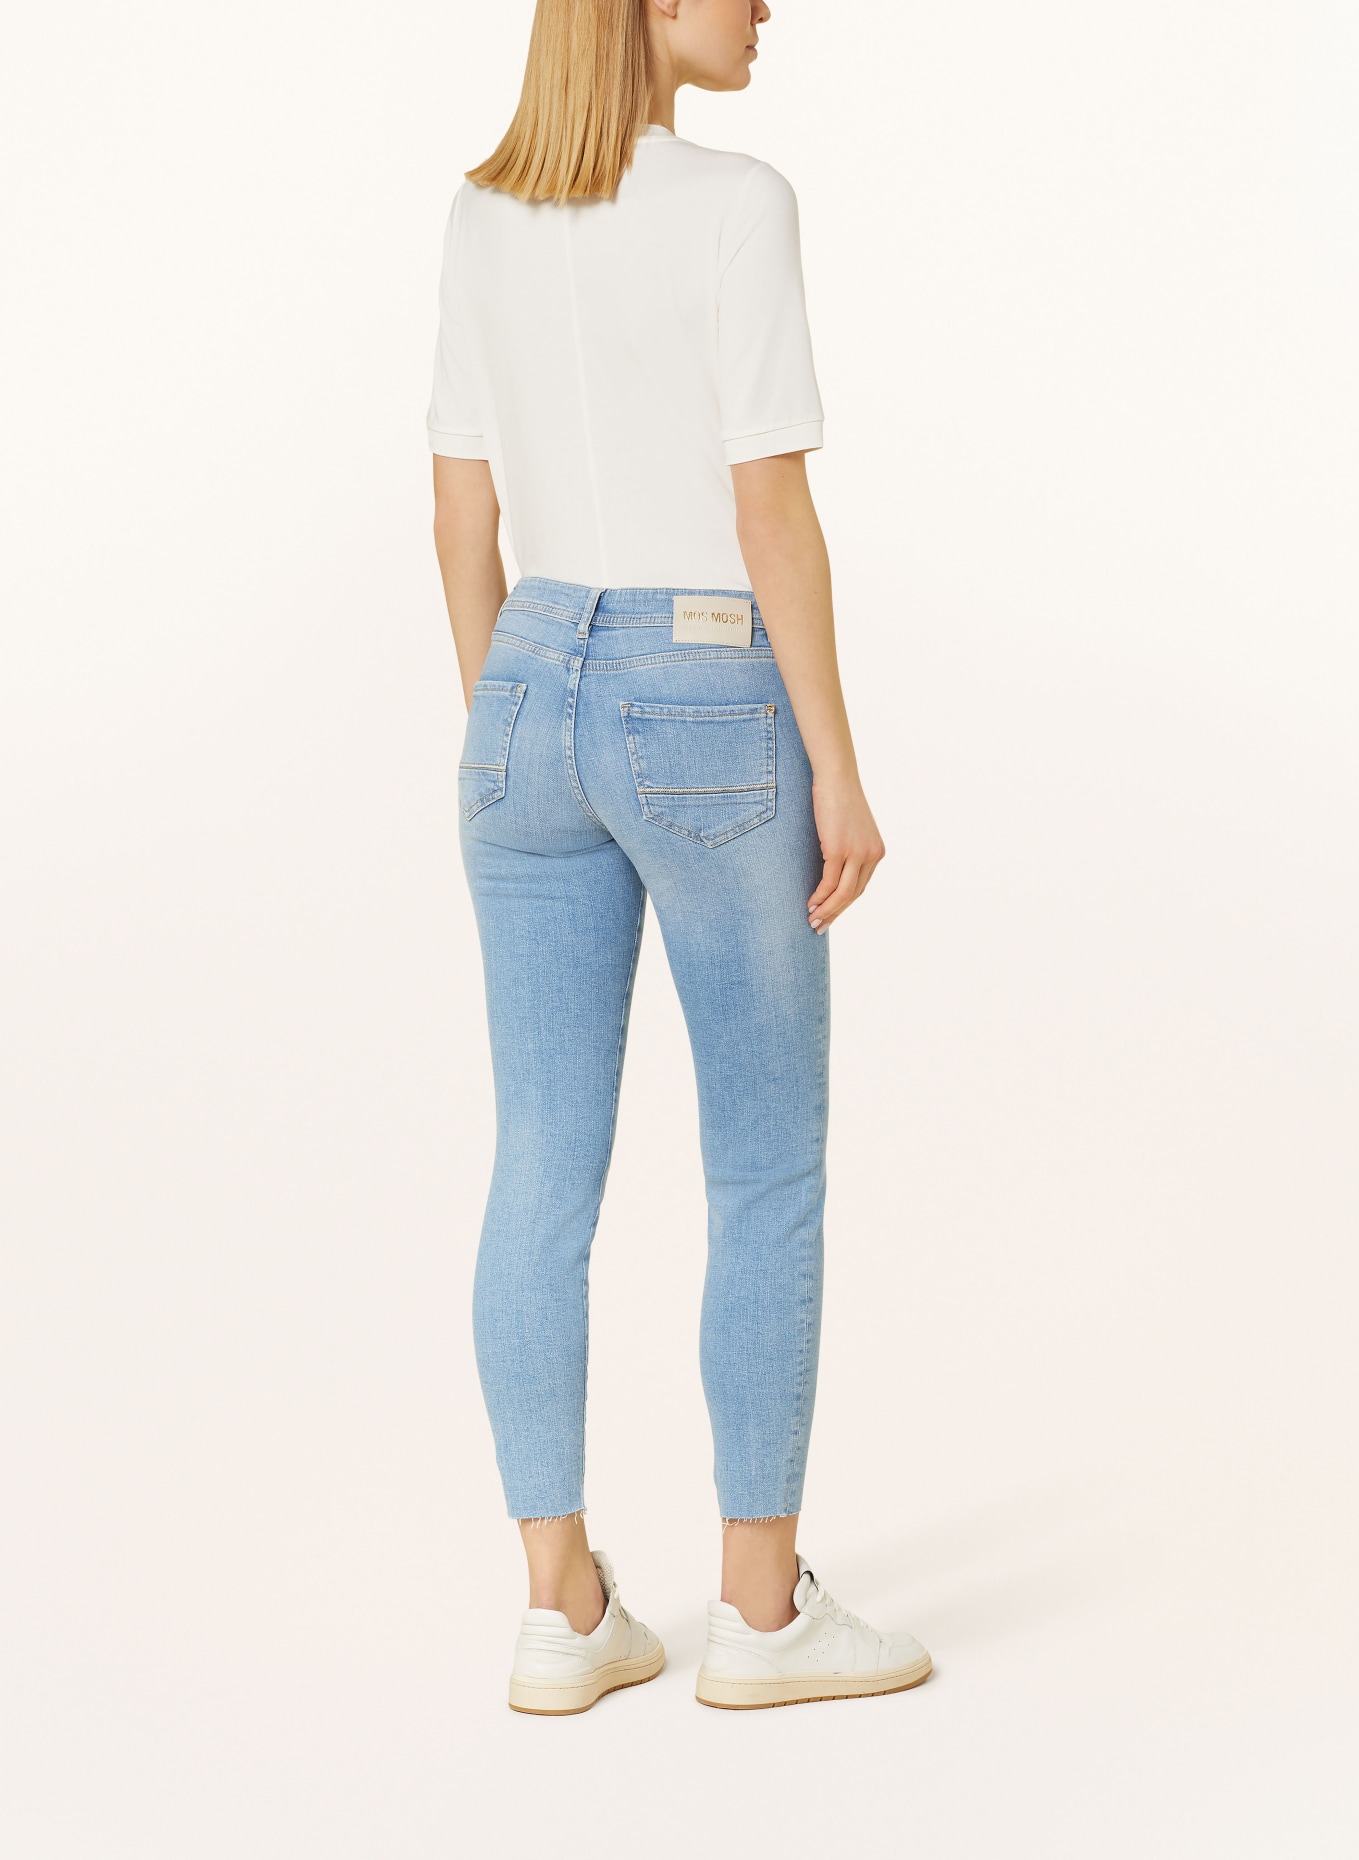 MOS MOSH Skinny jeans MMSUMNER, Color: 406 LIGHT BLUE (Image 3)